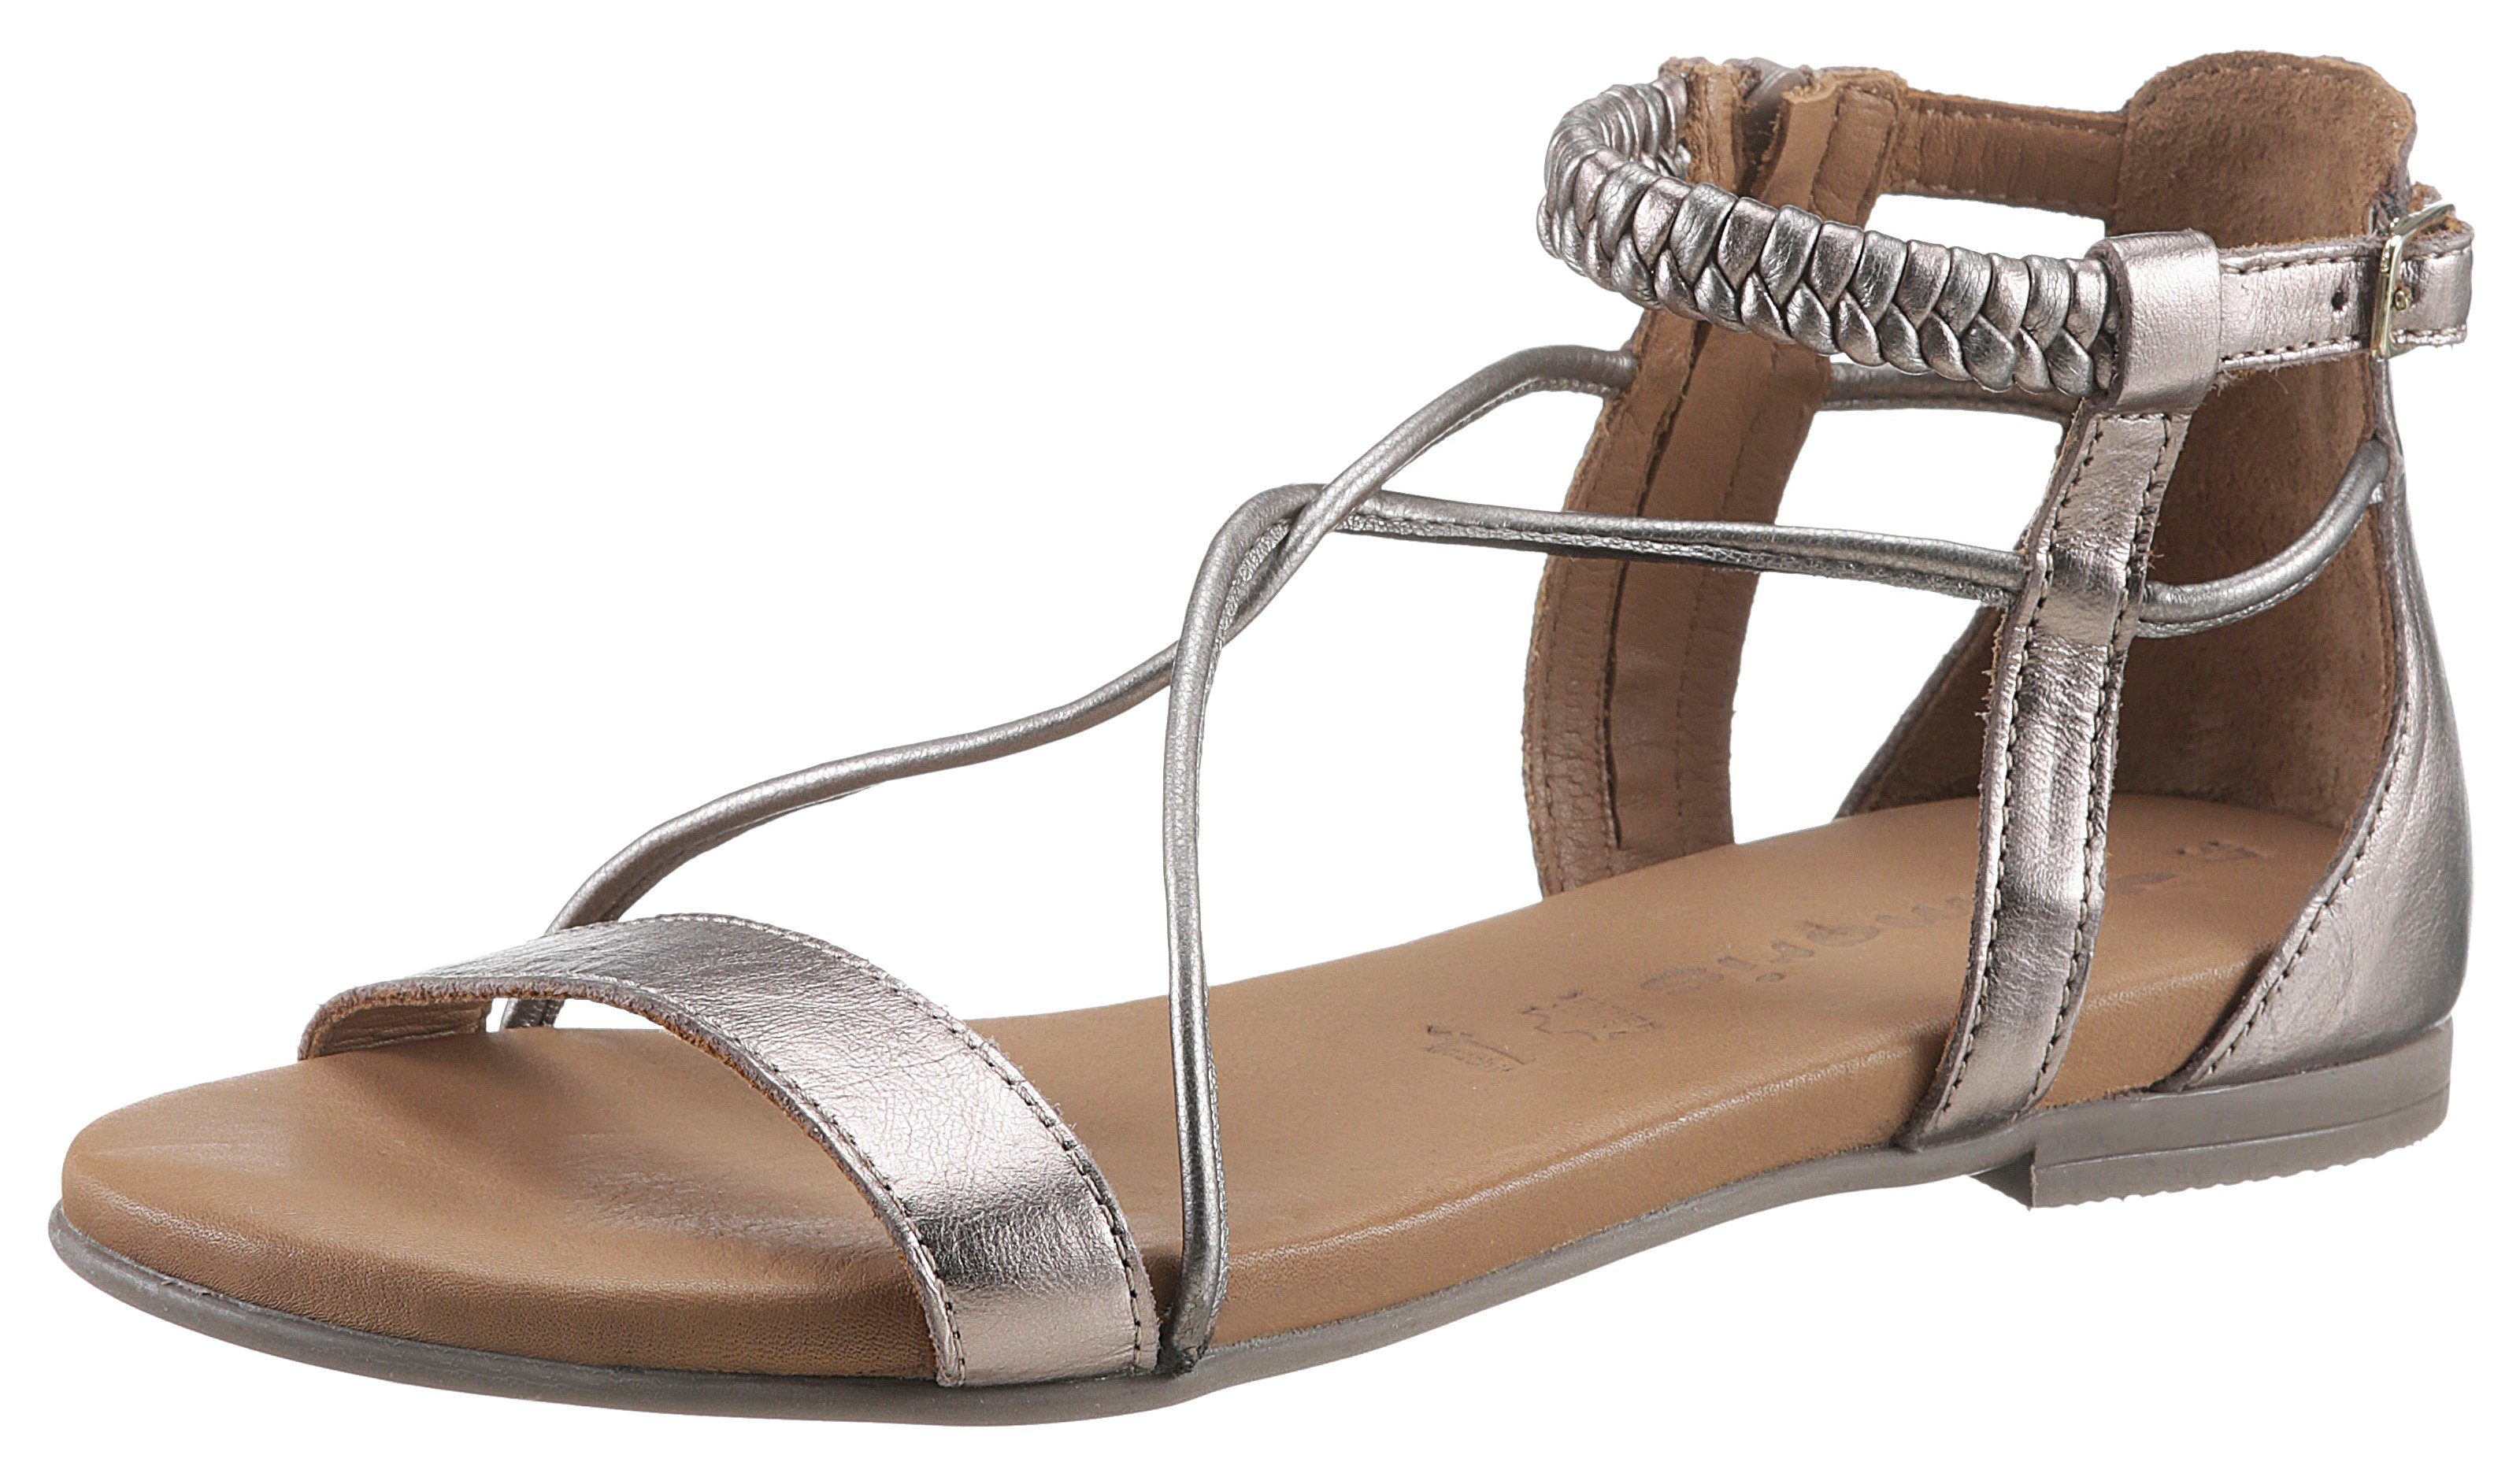 Tamaris »Kim« Sandale mit feinen Riemchen kaufen | OTTO